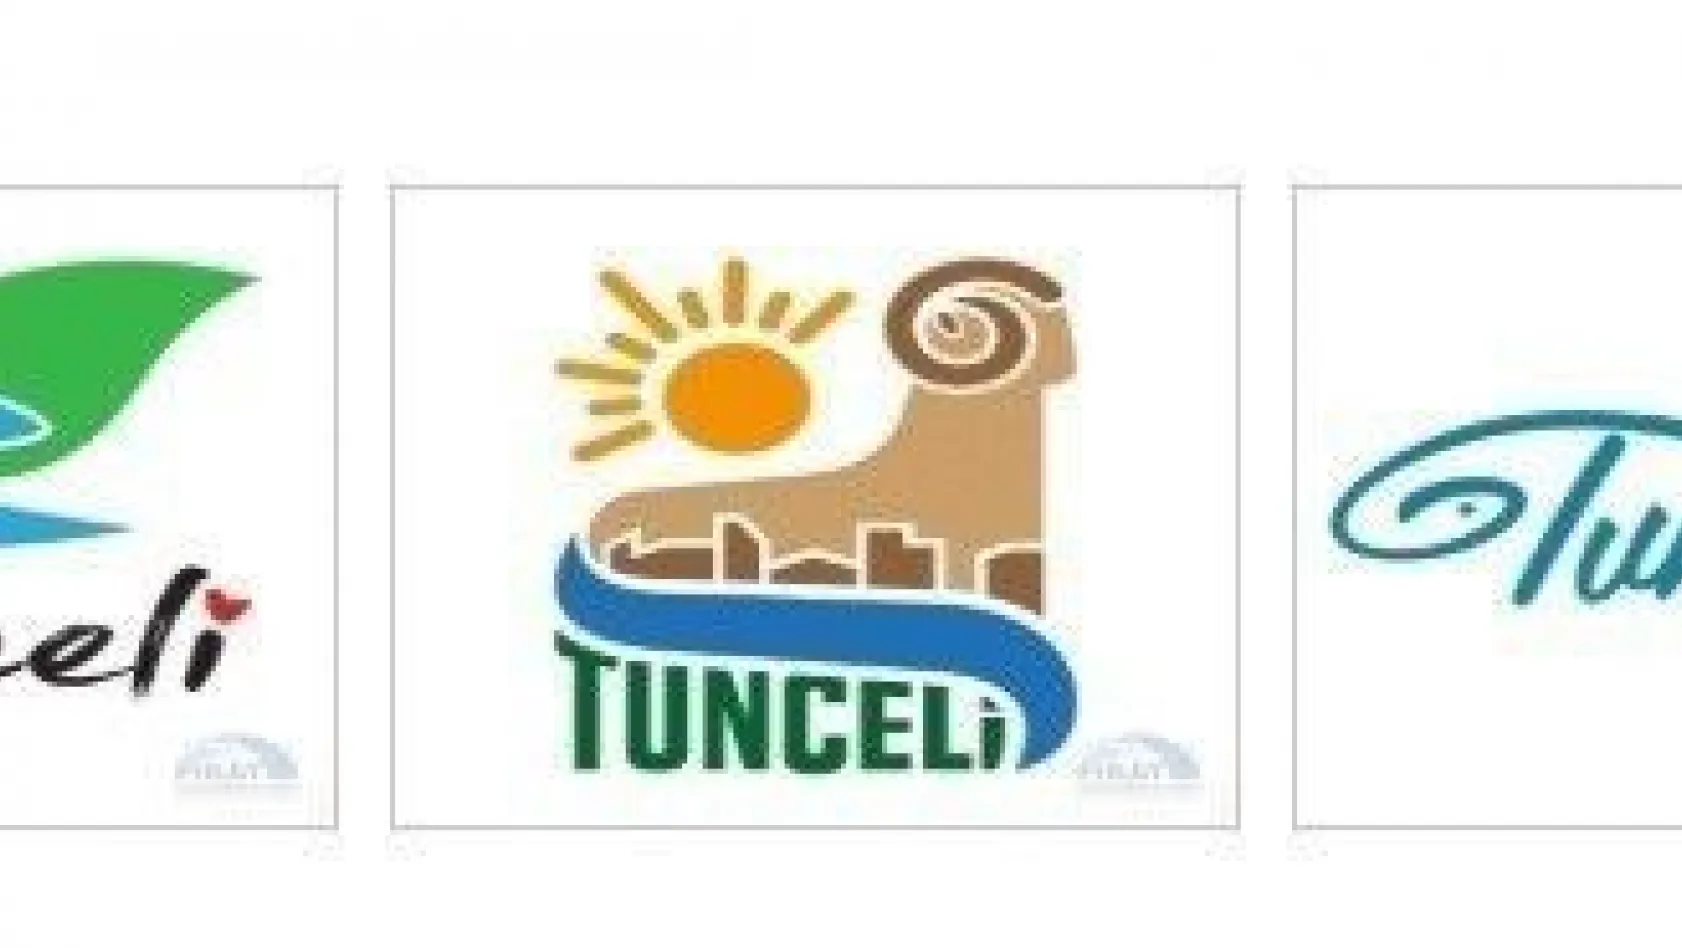 Tunceli'de kent logosu yarışmasında 3 eser halk oylamasına sunuldu
